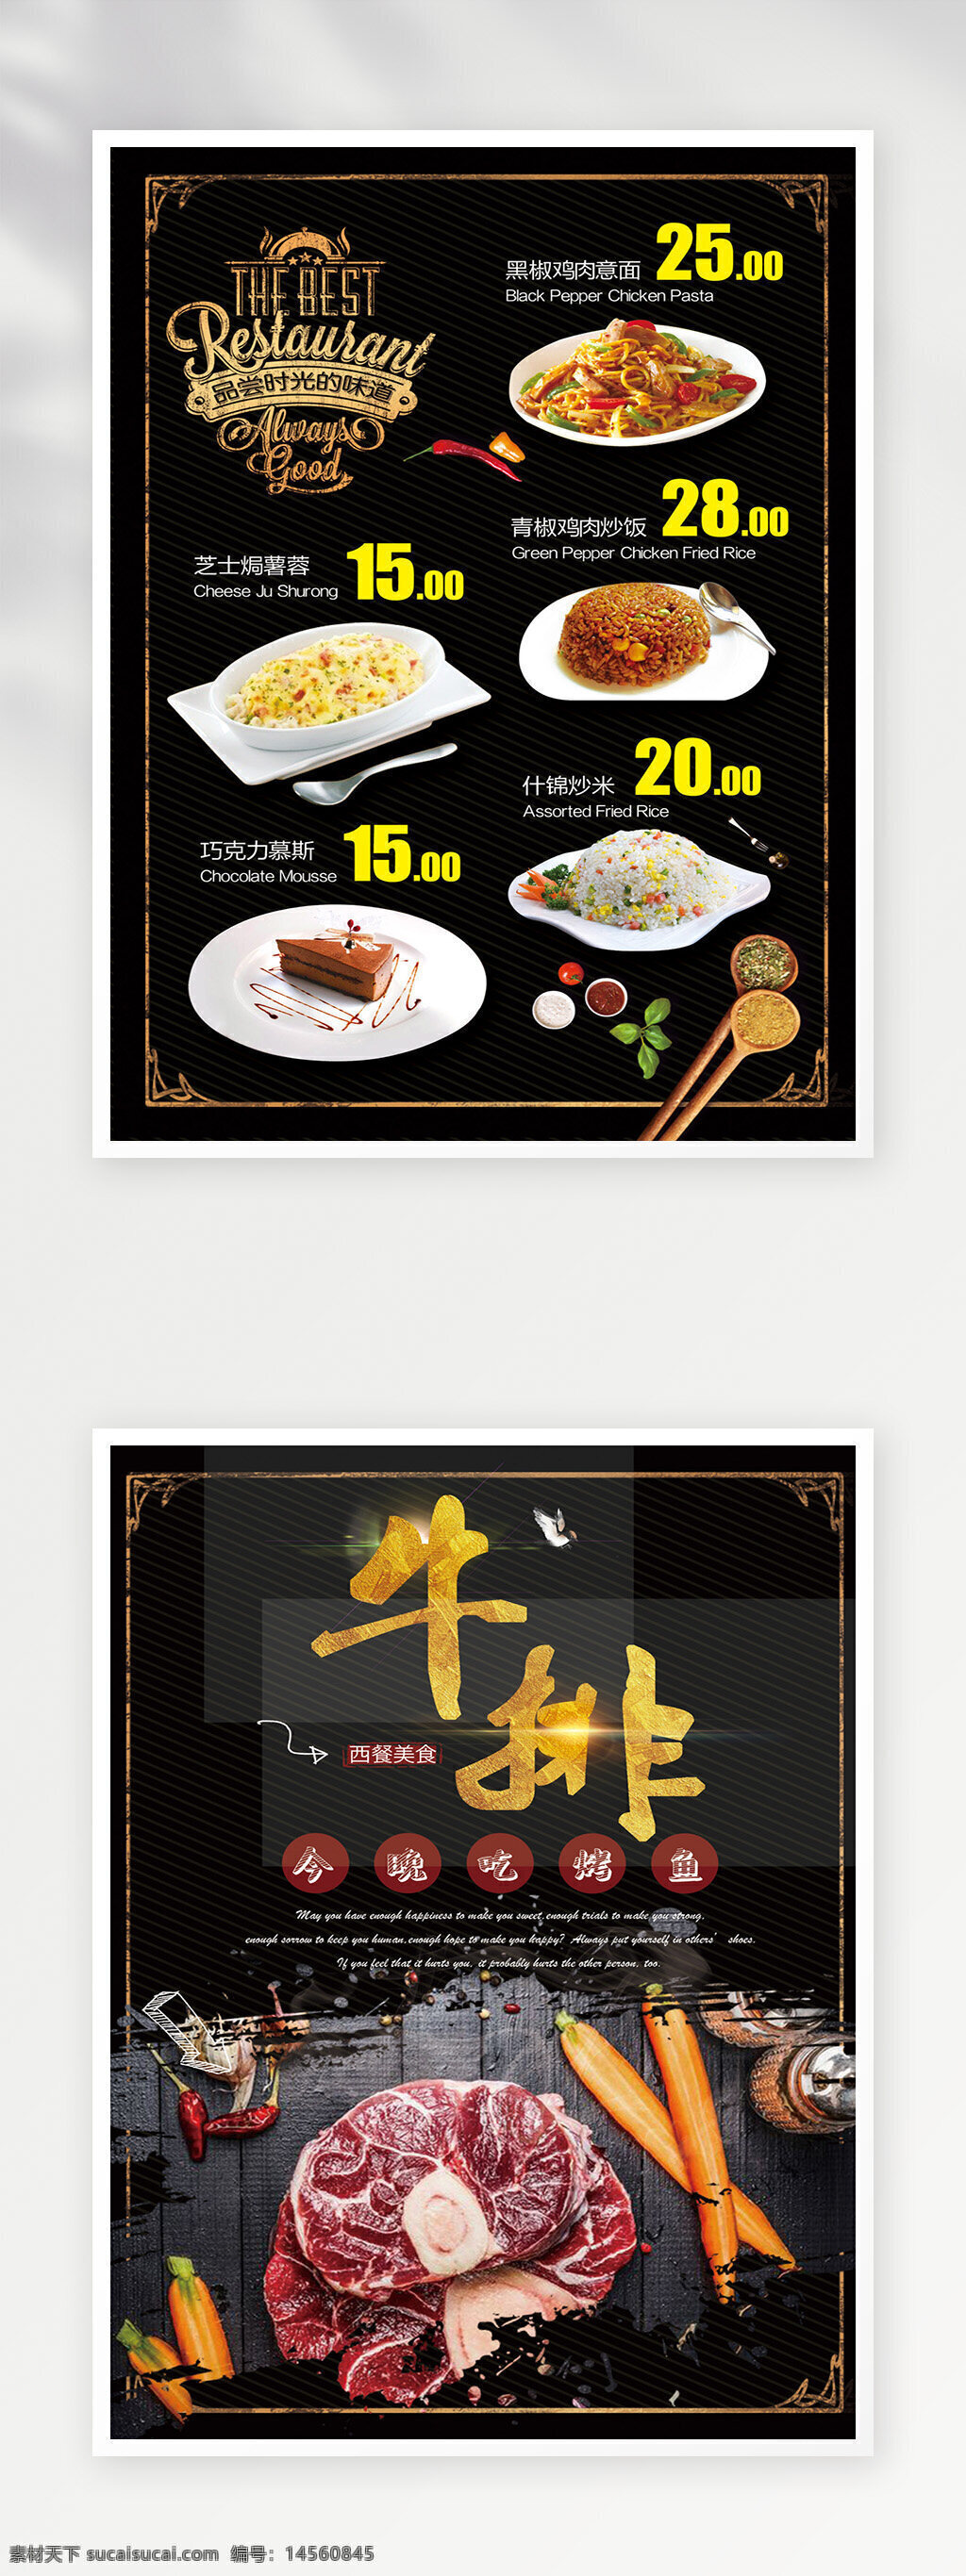 菜单 菜谱设计 菜单设计 菜单菜谱 点餐单 菜谱 价目表 菜单广告 菜单模板